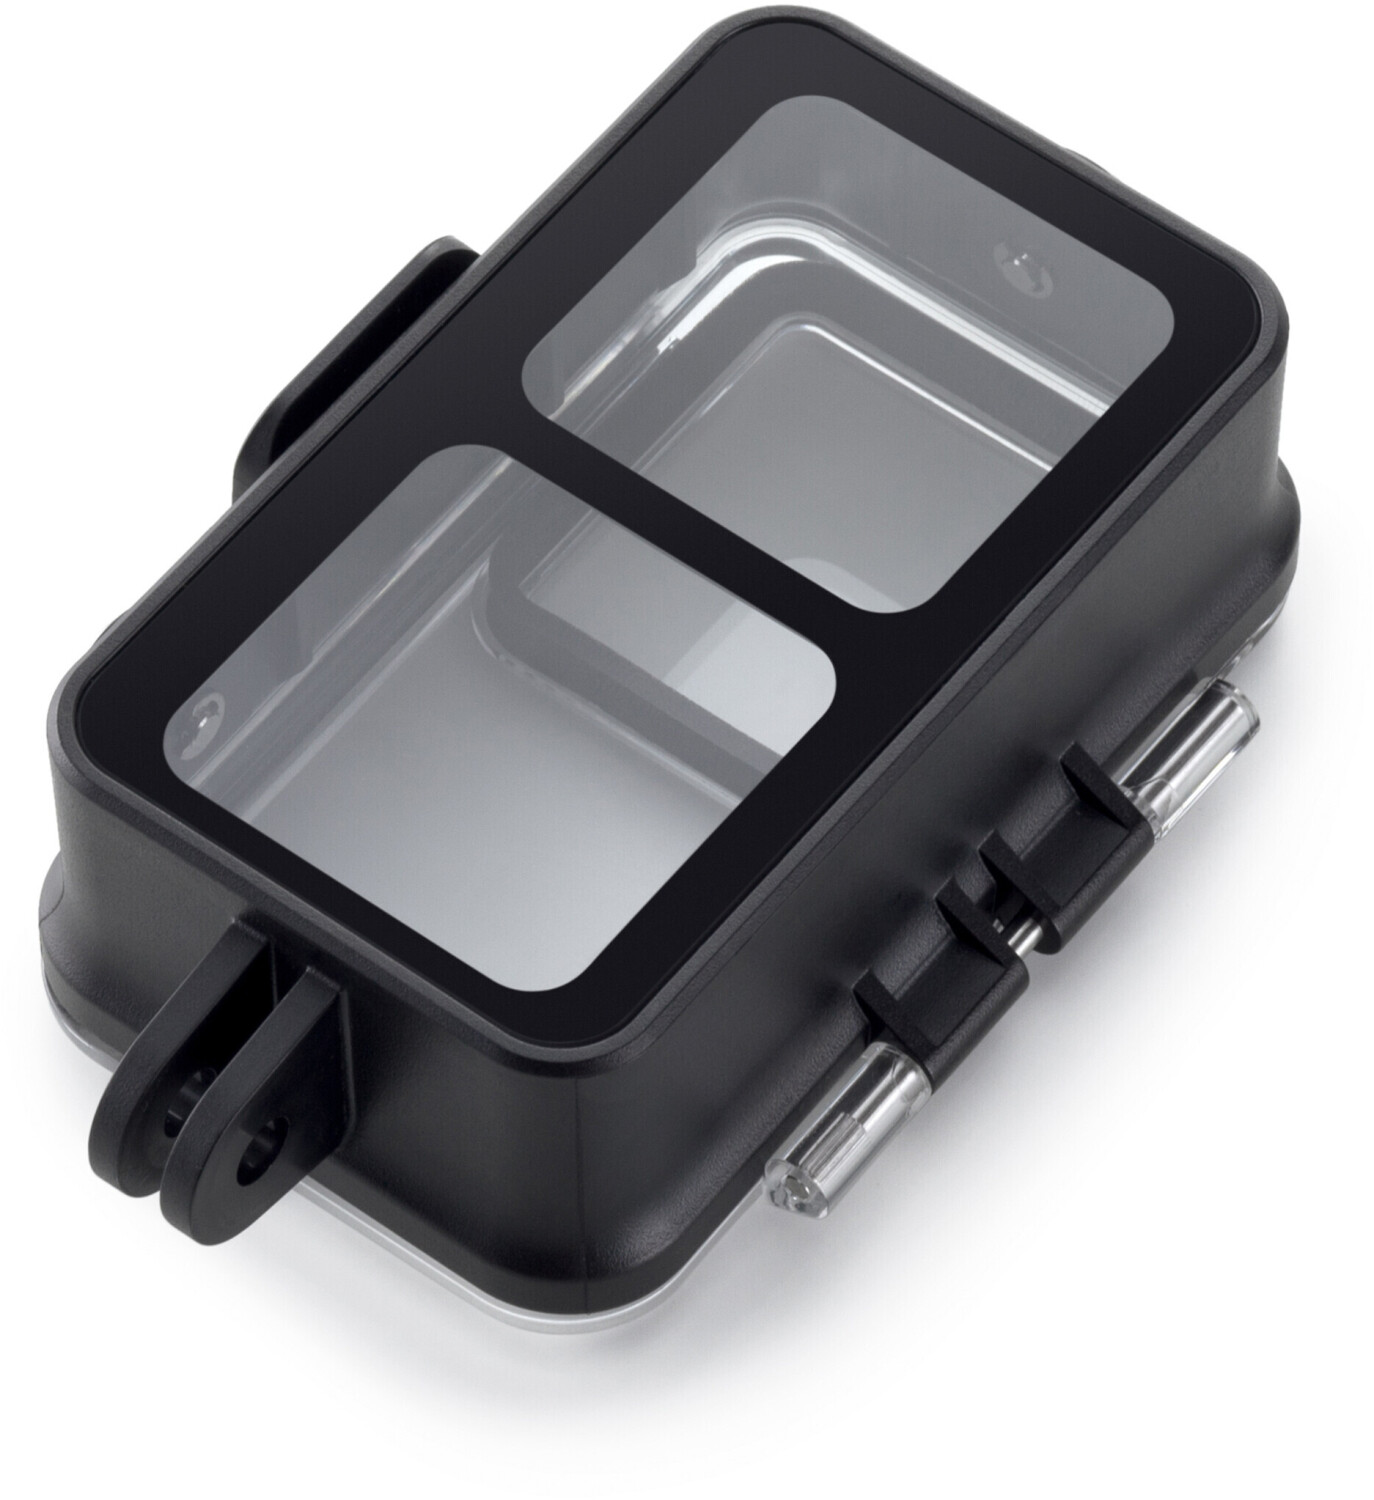 Achetez EWB8796_2 Boîte de Rangement Imperméable Portable Pour DJI